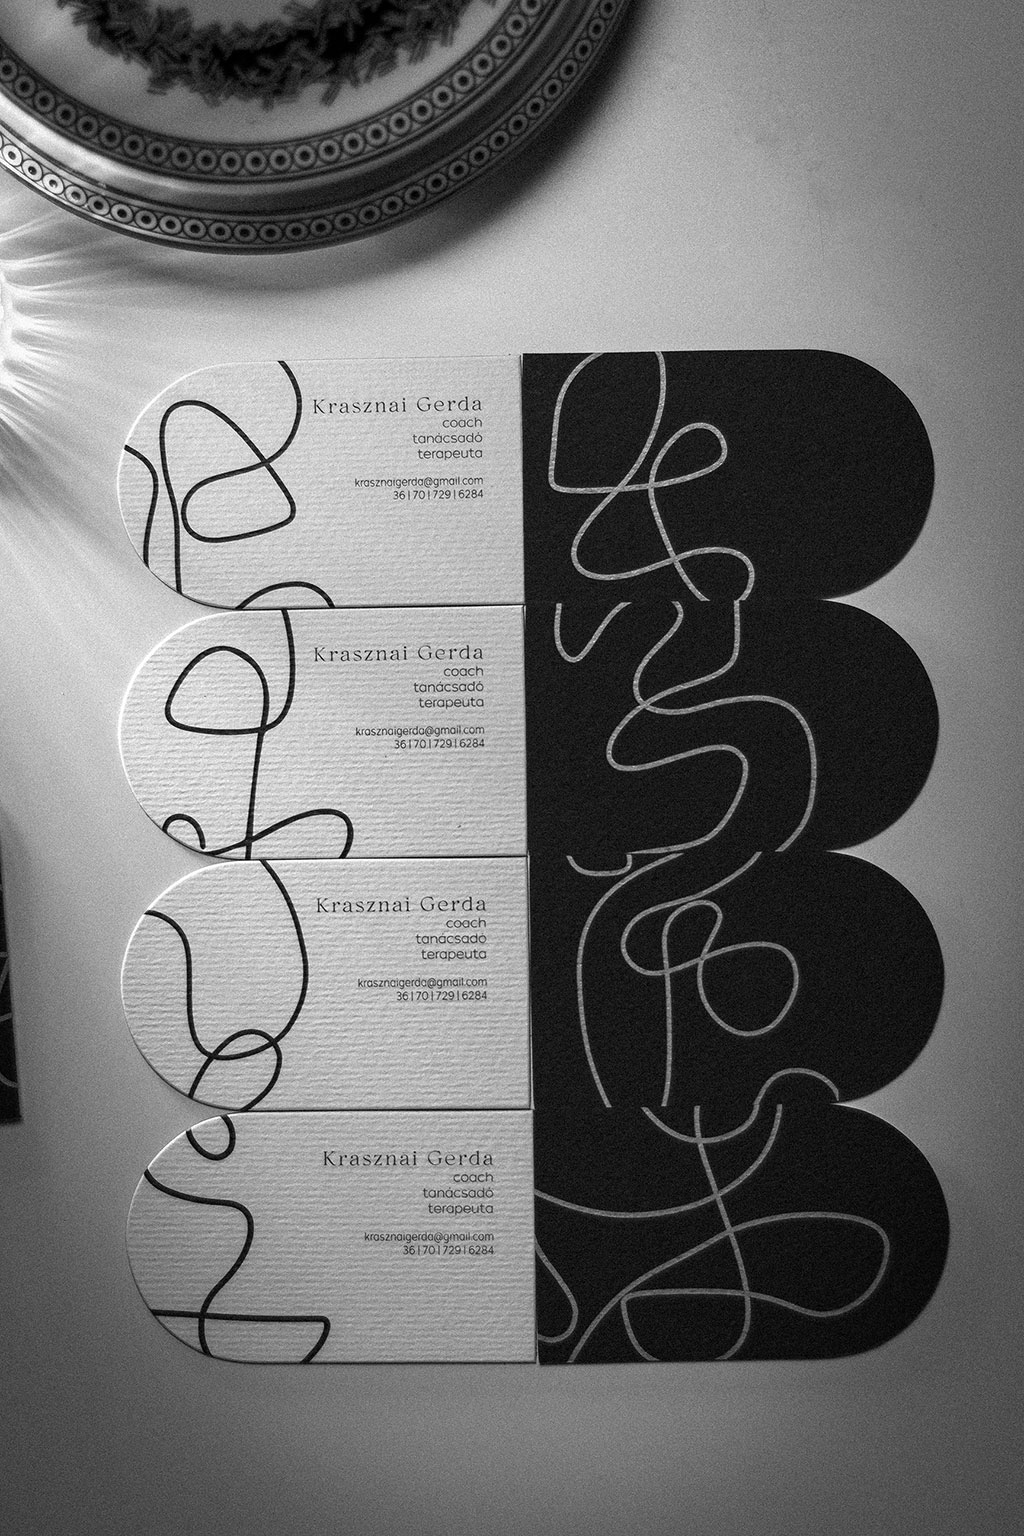 Háromrétegű boltíves névjegy digitfehérrel fekete-fehér-piros színkombinációban, mindkét oldalán nyomtatva 25 féle grafikai motívummal egyedi formára vágva